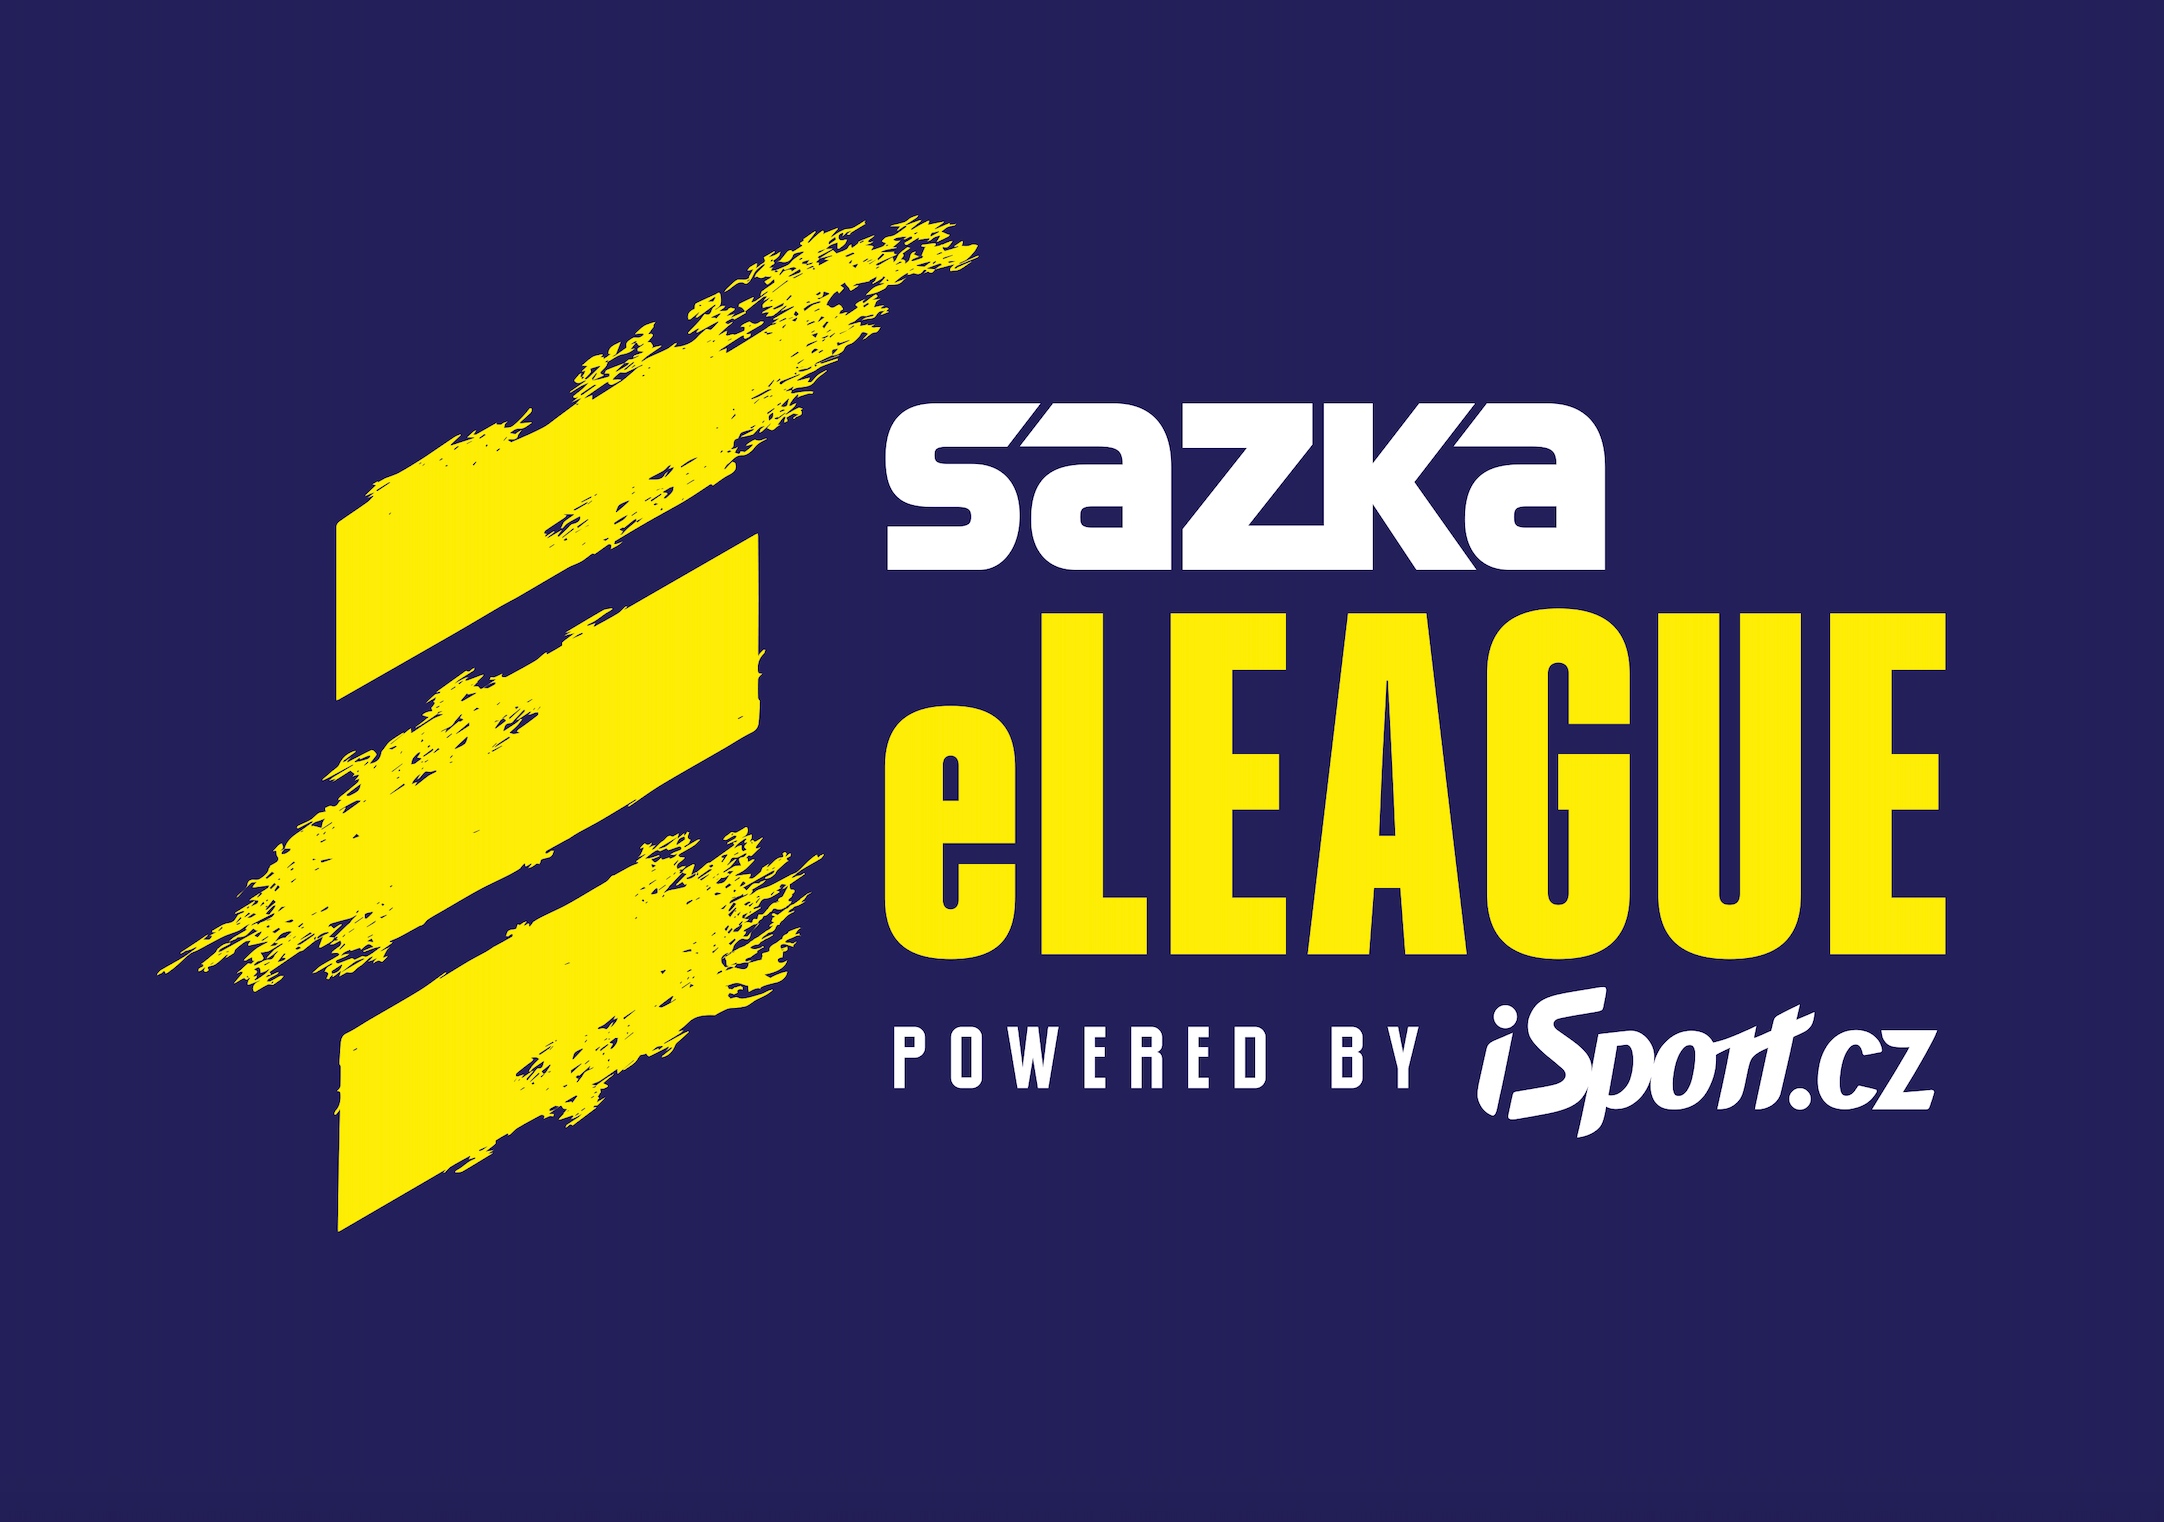 Sazka eLEAGUE logo.jpg